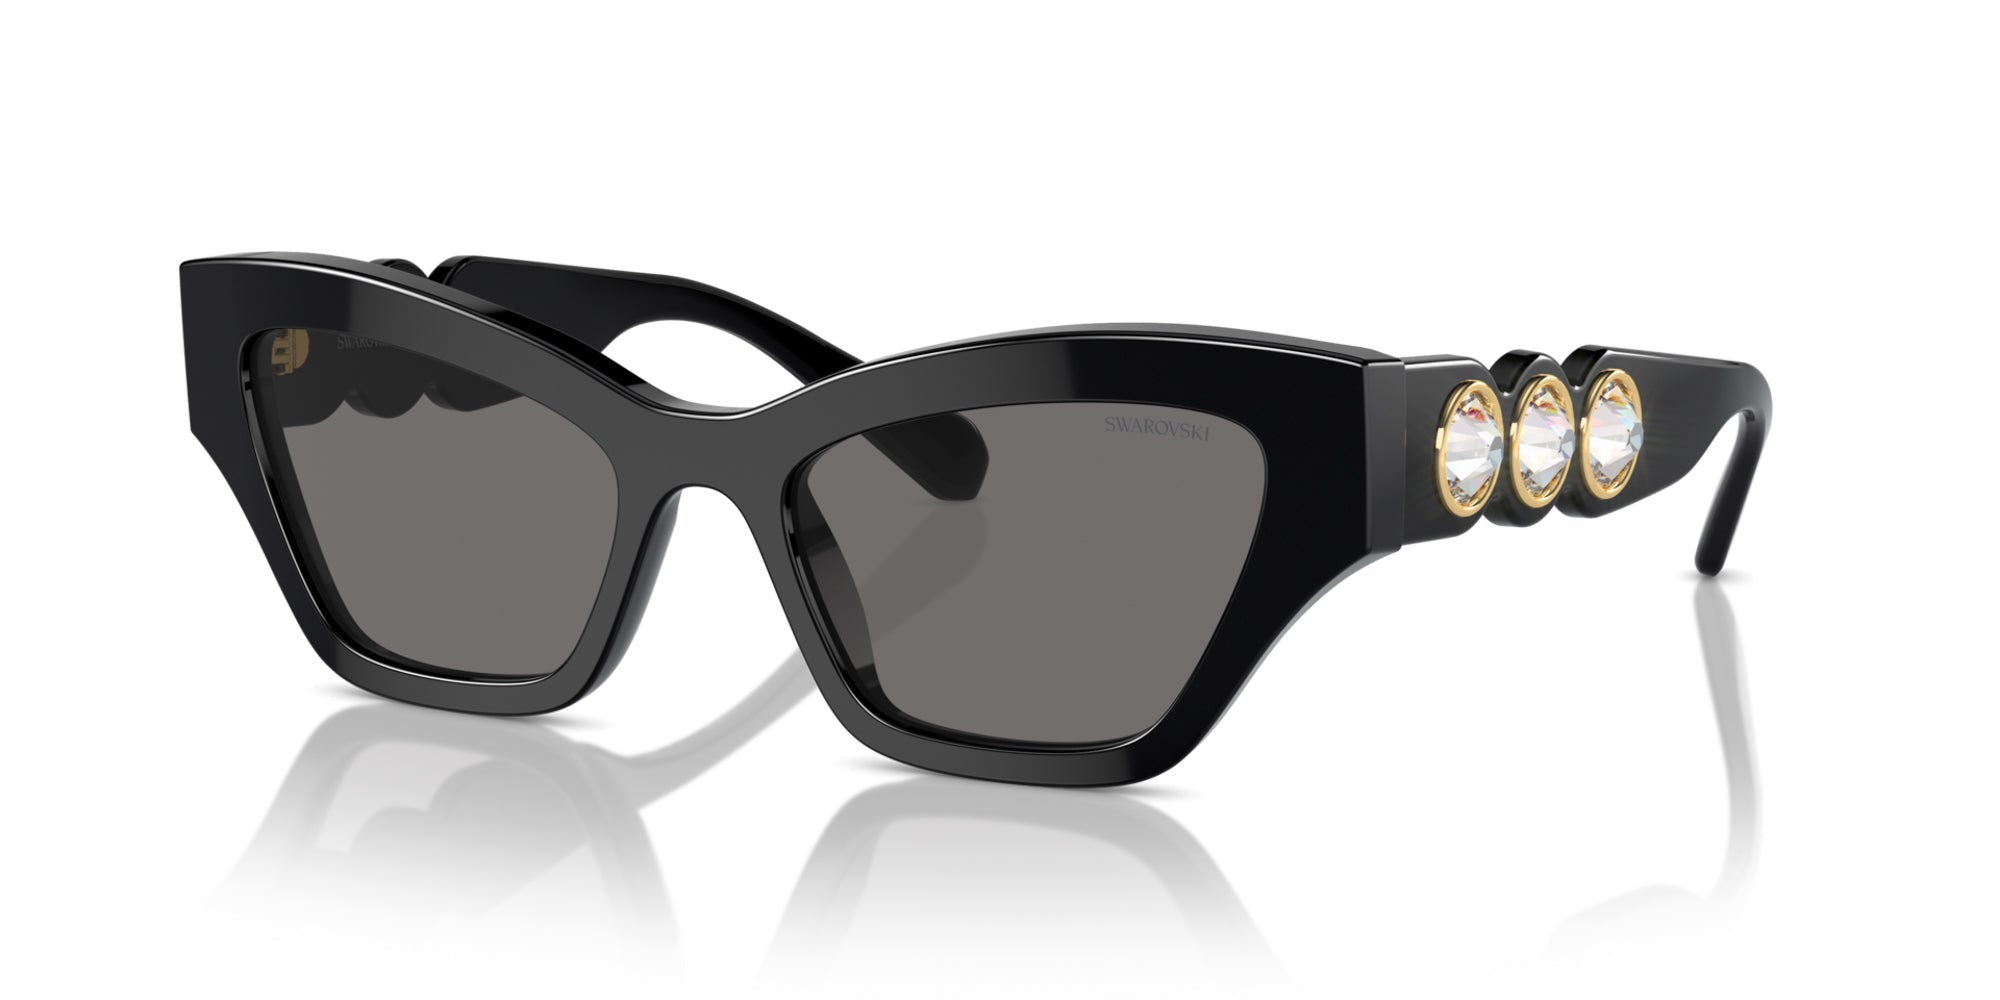 Polarized Sunglasses Coating Mirror Sun Glasses Fashion Eyewear